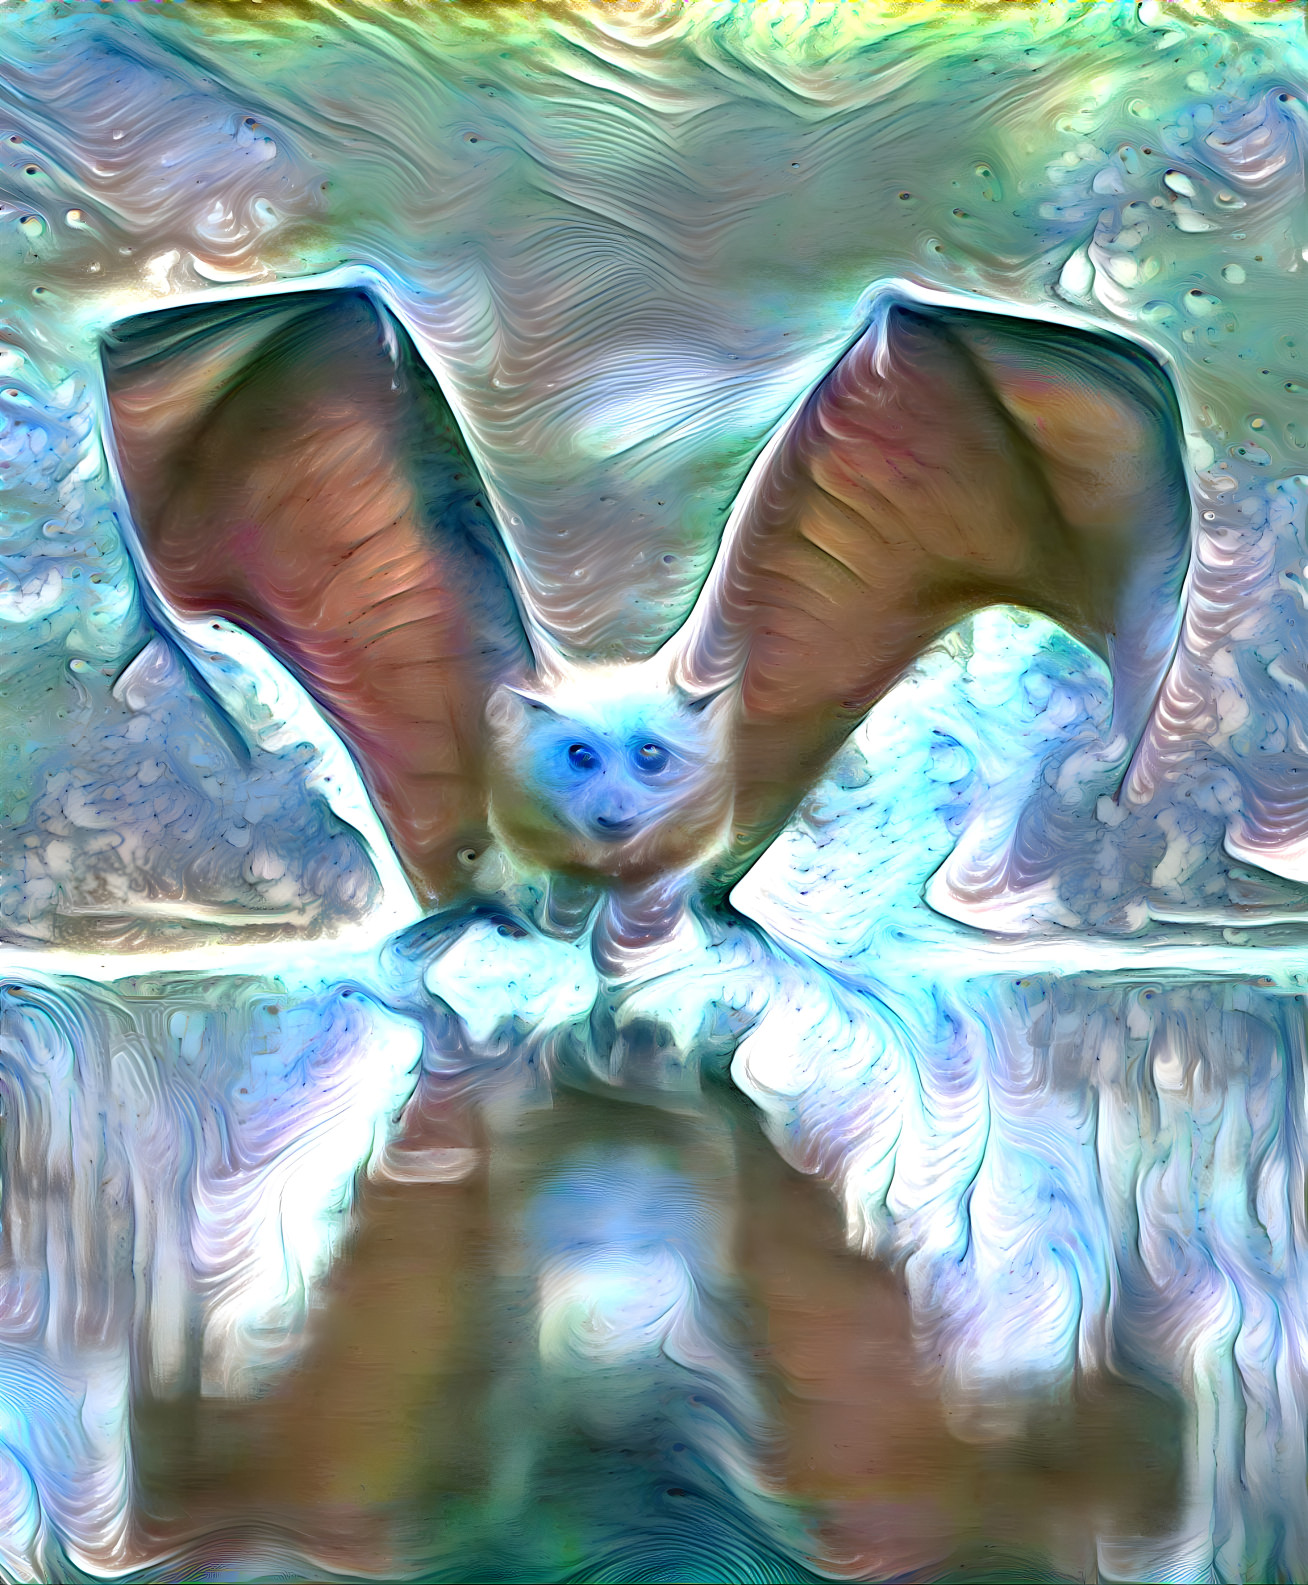 The Bat artist,